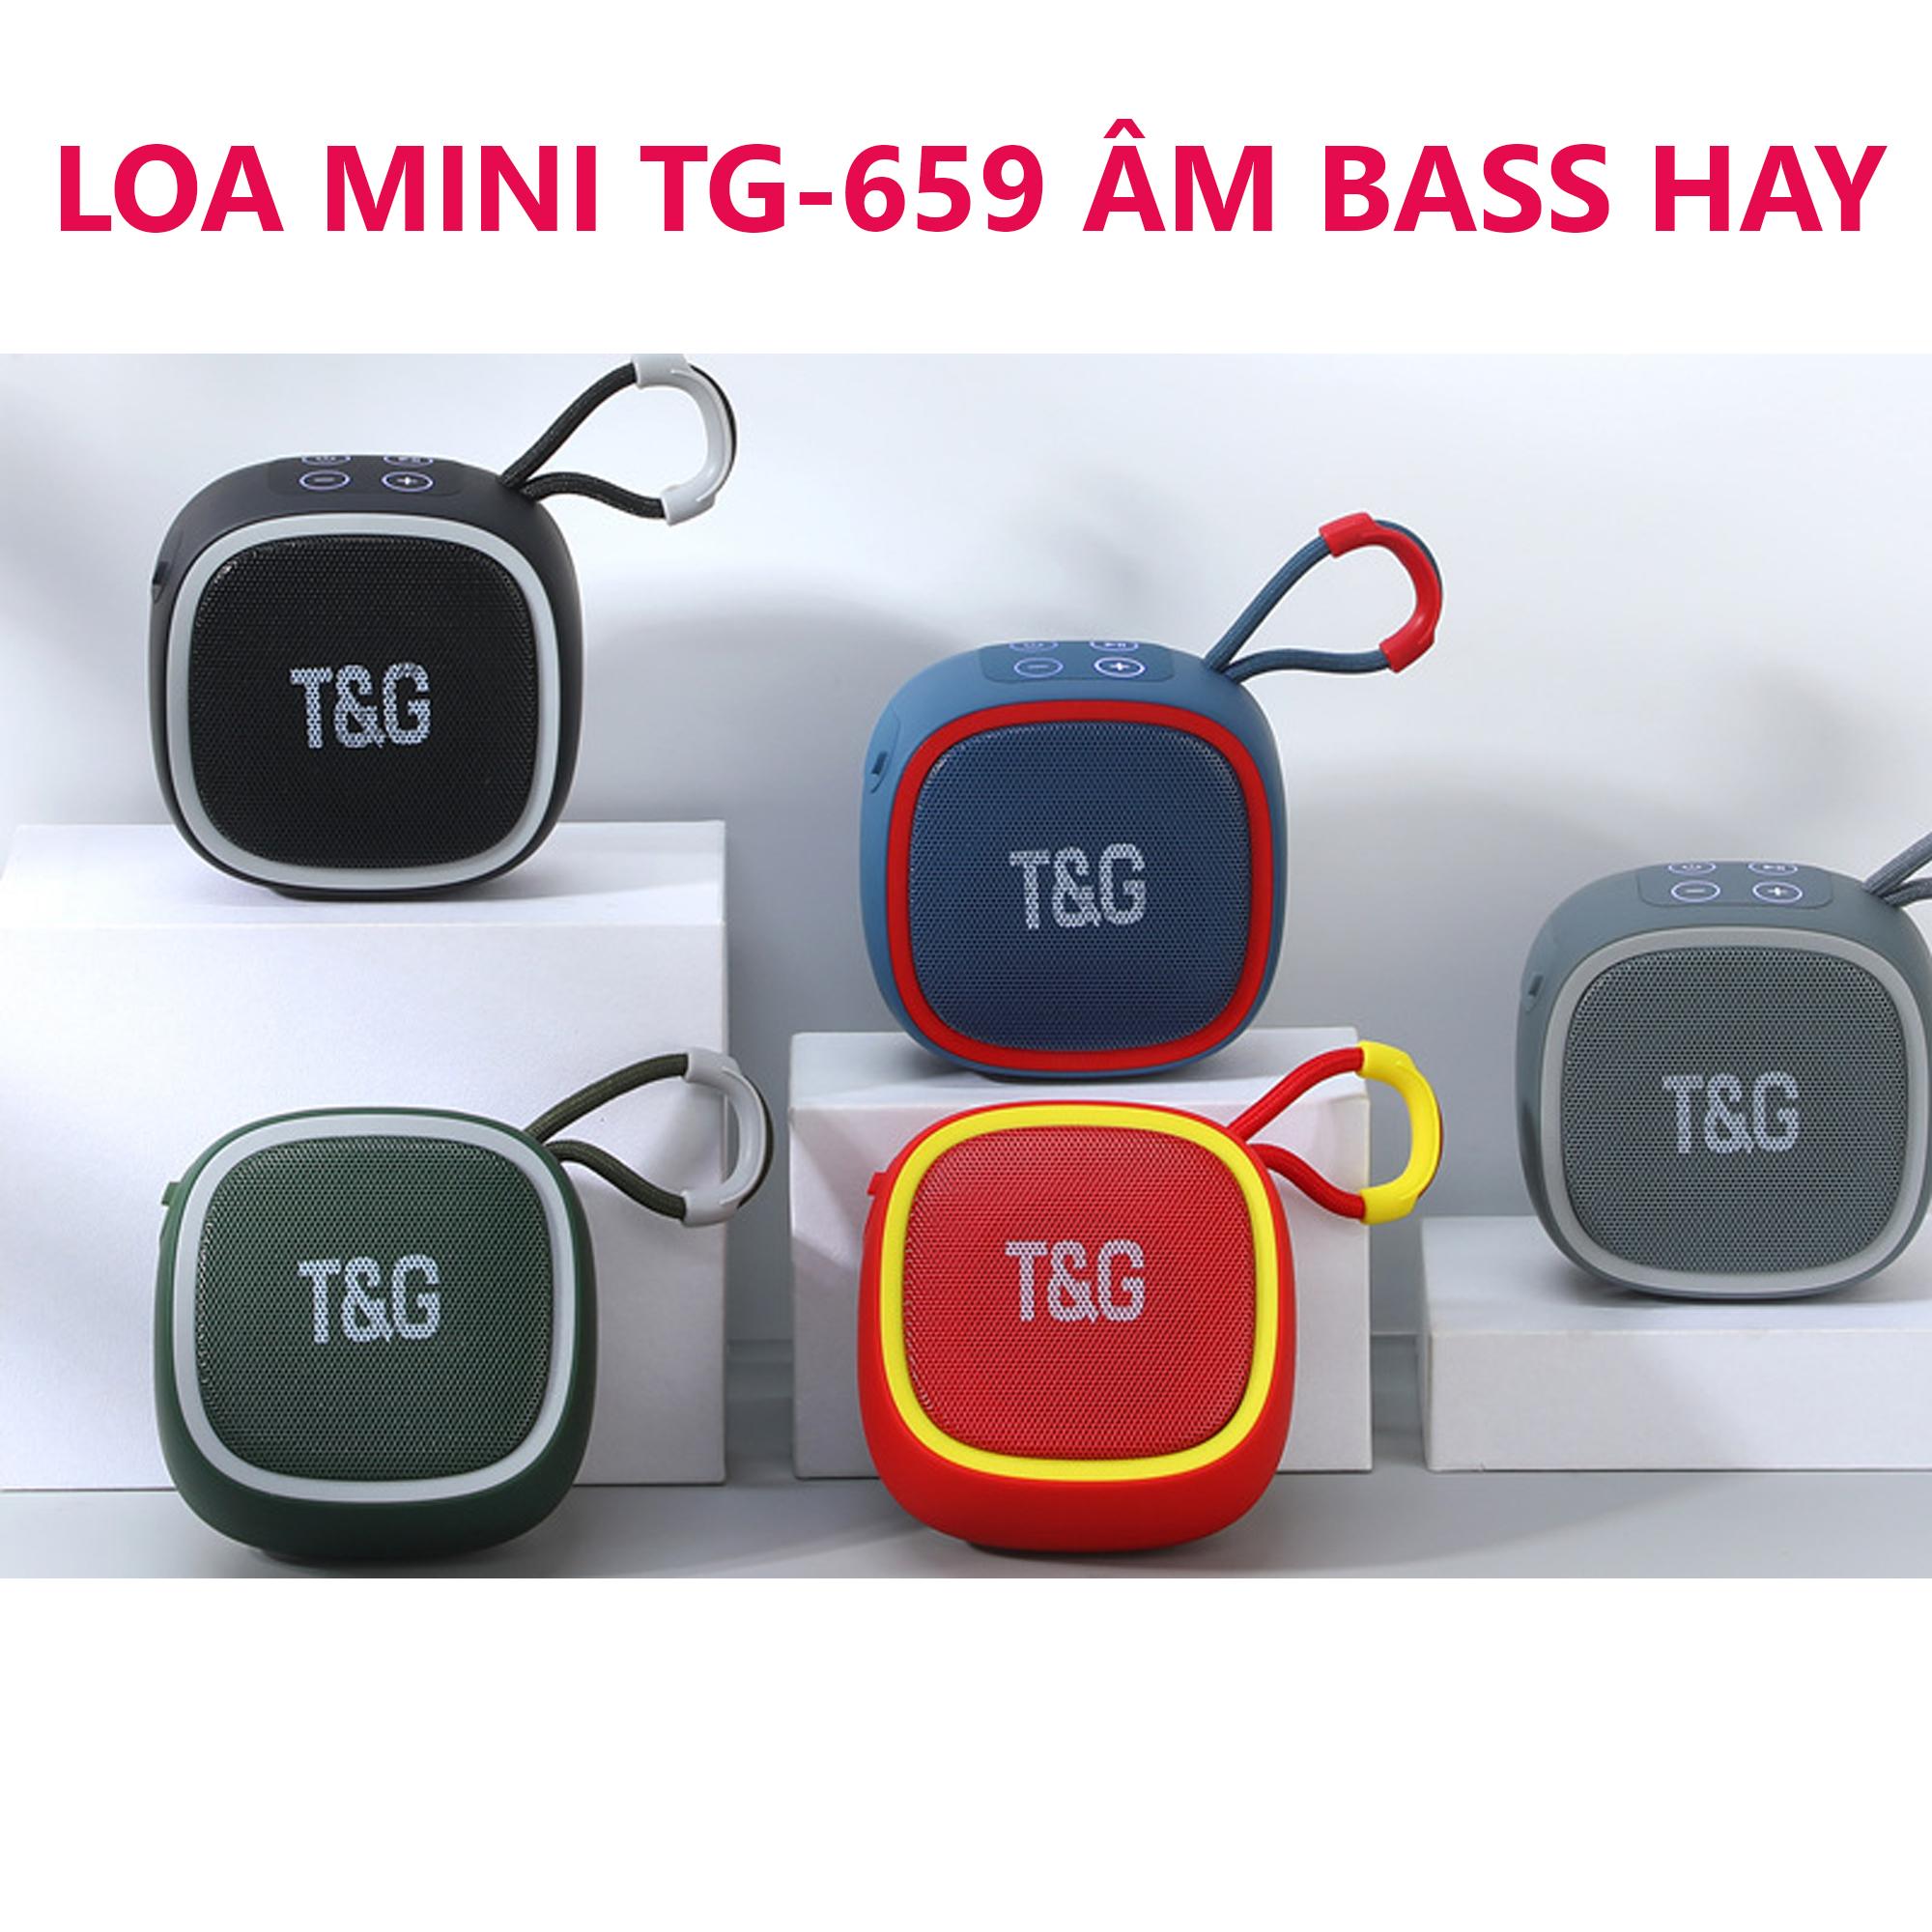 Loa Bluetooth Mini TG-659 Chính Hãng, Loa Không Dây Thiết Kế Nhỏ Gọn Sang Trọng Nghe Nhạc Hay Có Móc Treo Giá Rẻ